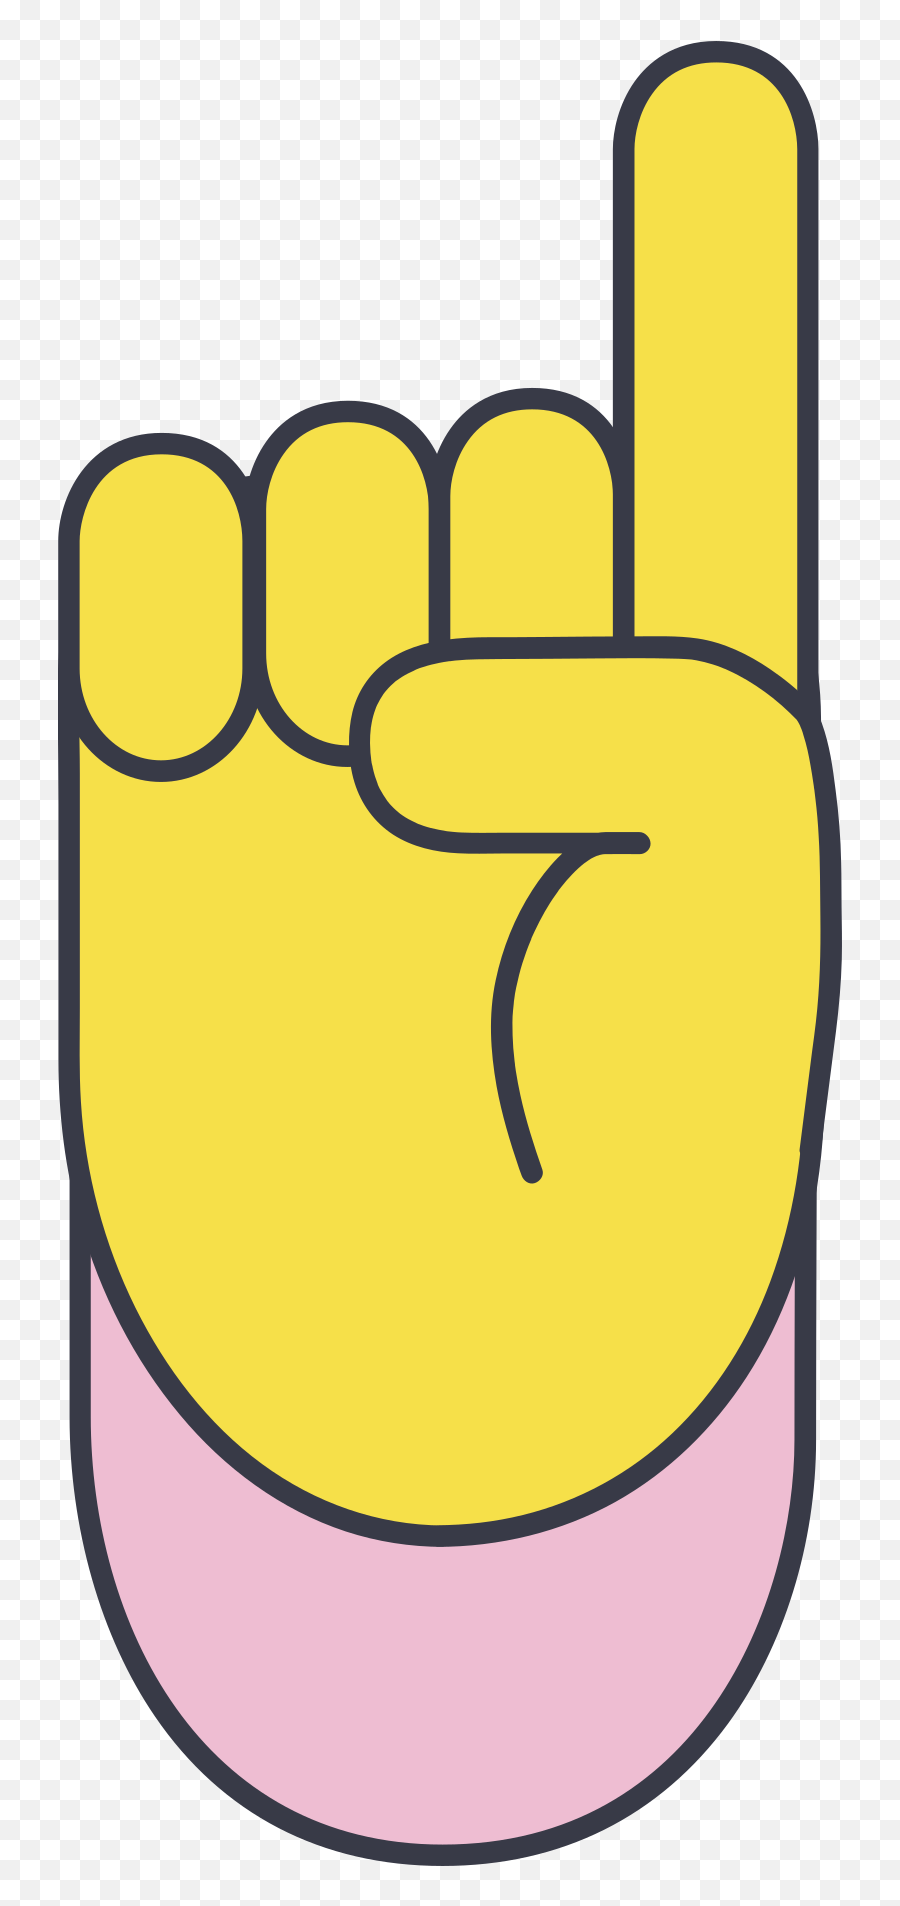 Index Pointing Up Illustration In Png Svg Emoji,Index Finger Pointing Emoji